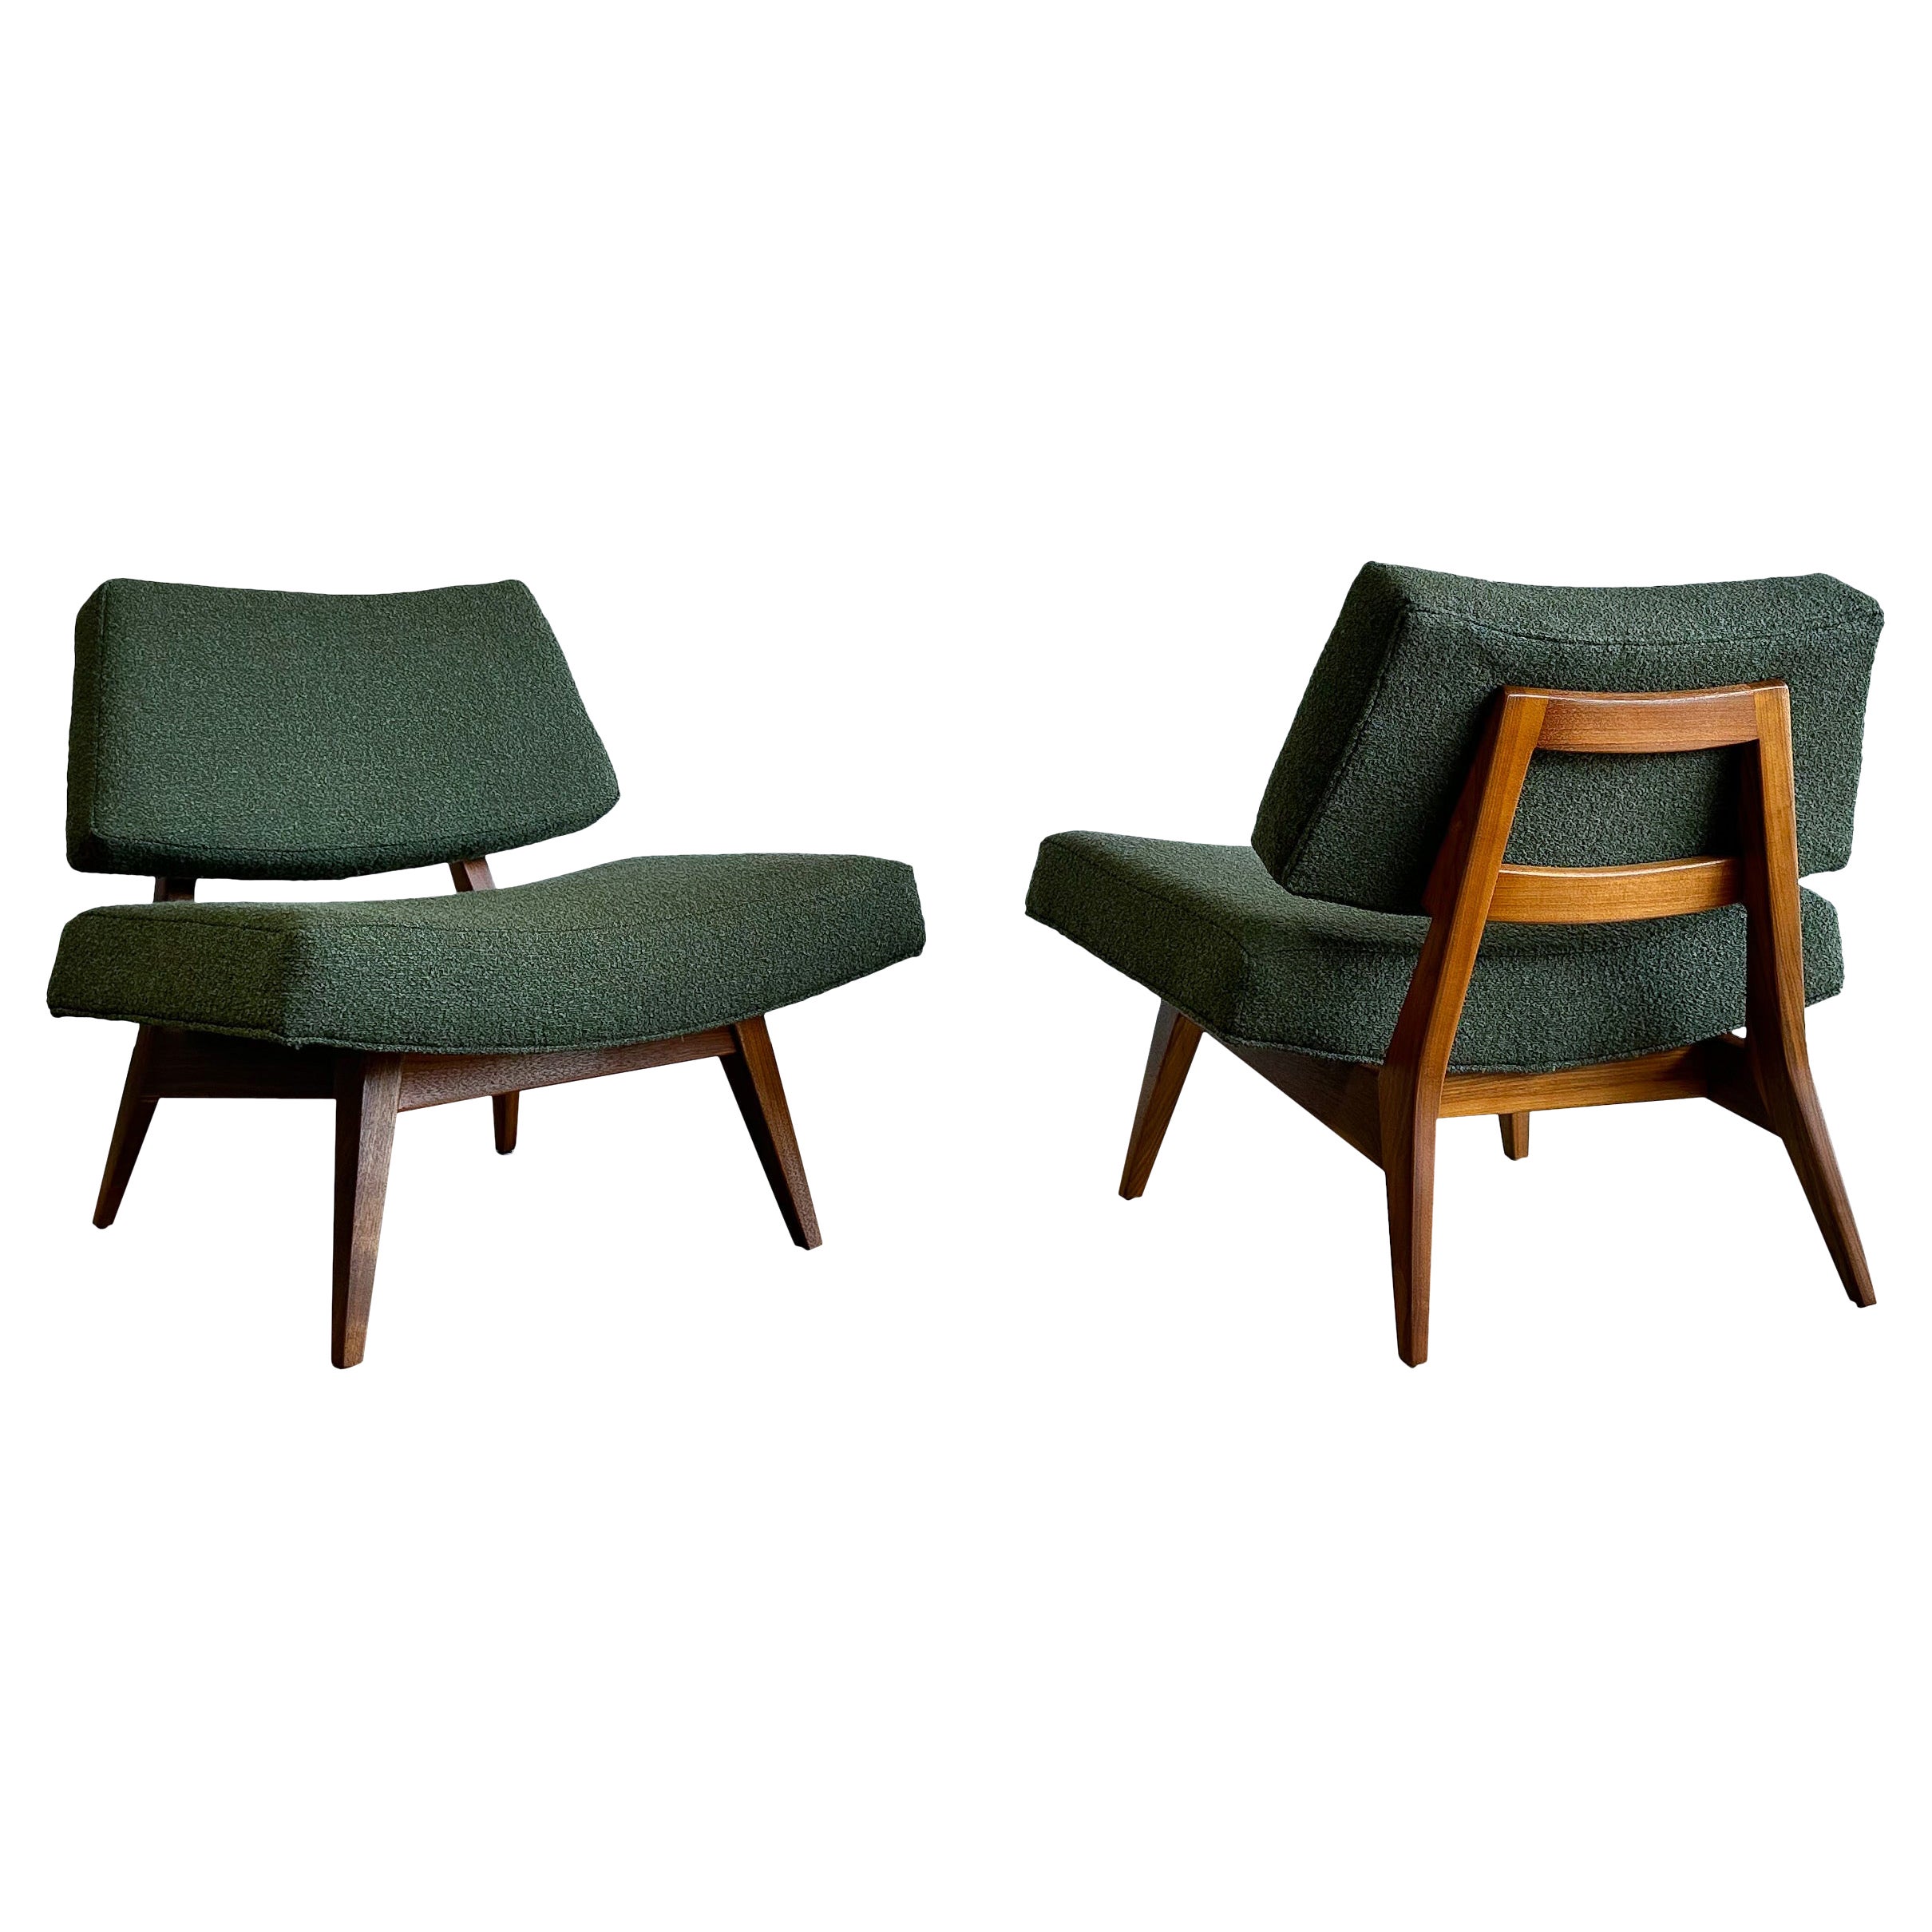 Rare Jens Risom Lounge Chairs, Model U-416, Walnut and Bouclé, 1950s